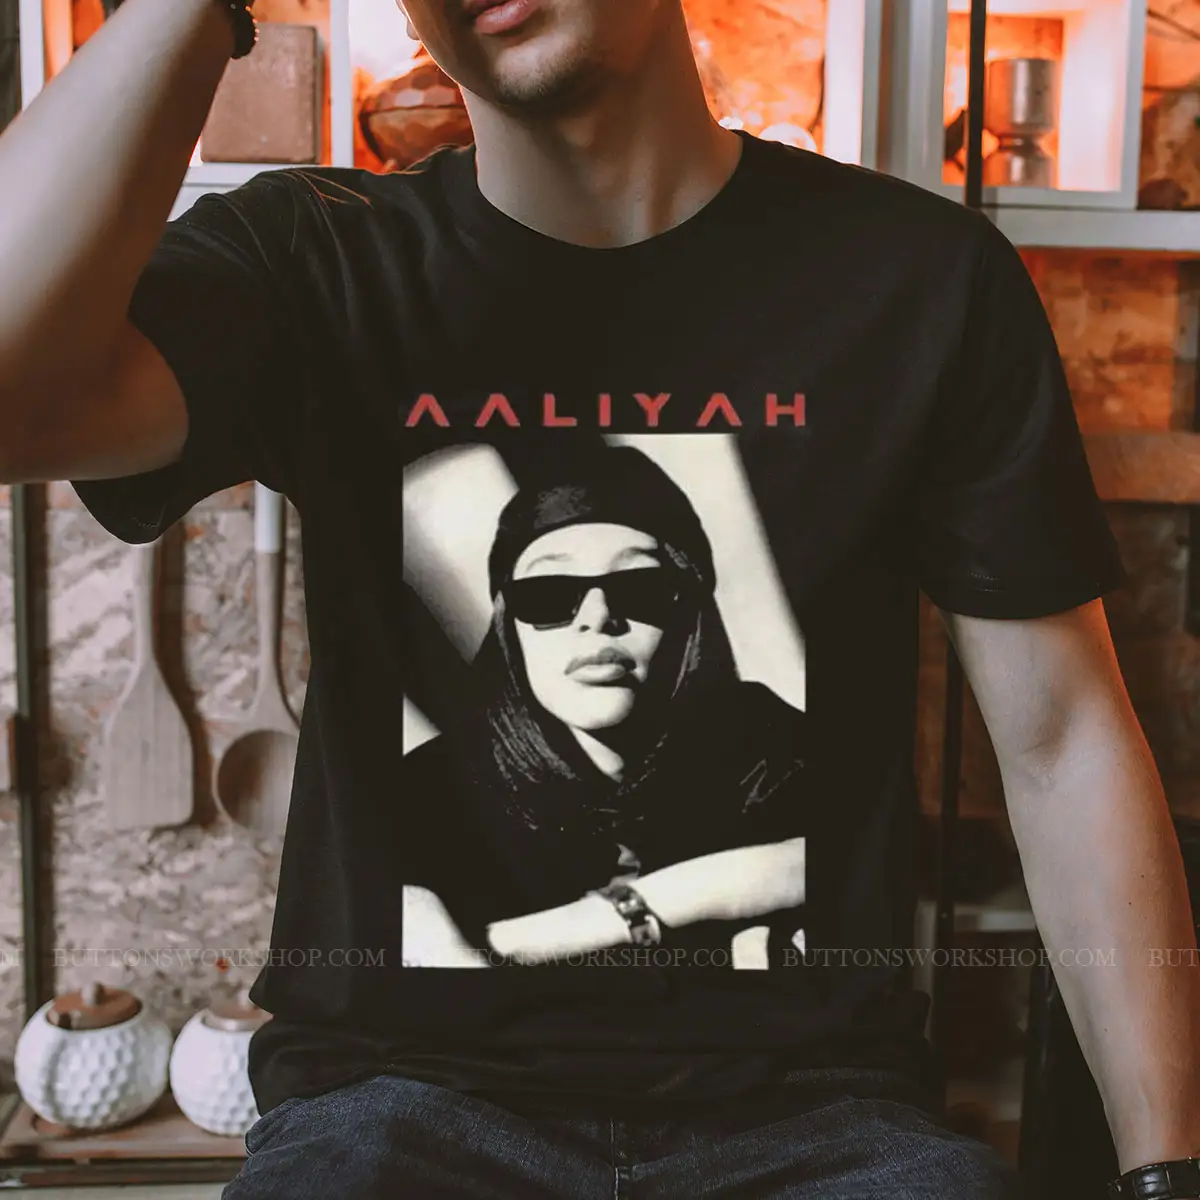 Aaliyah Tee Shirt Unisex Tshirt